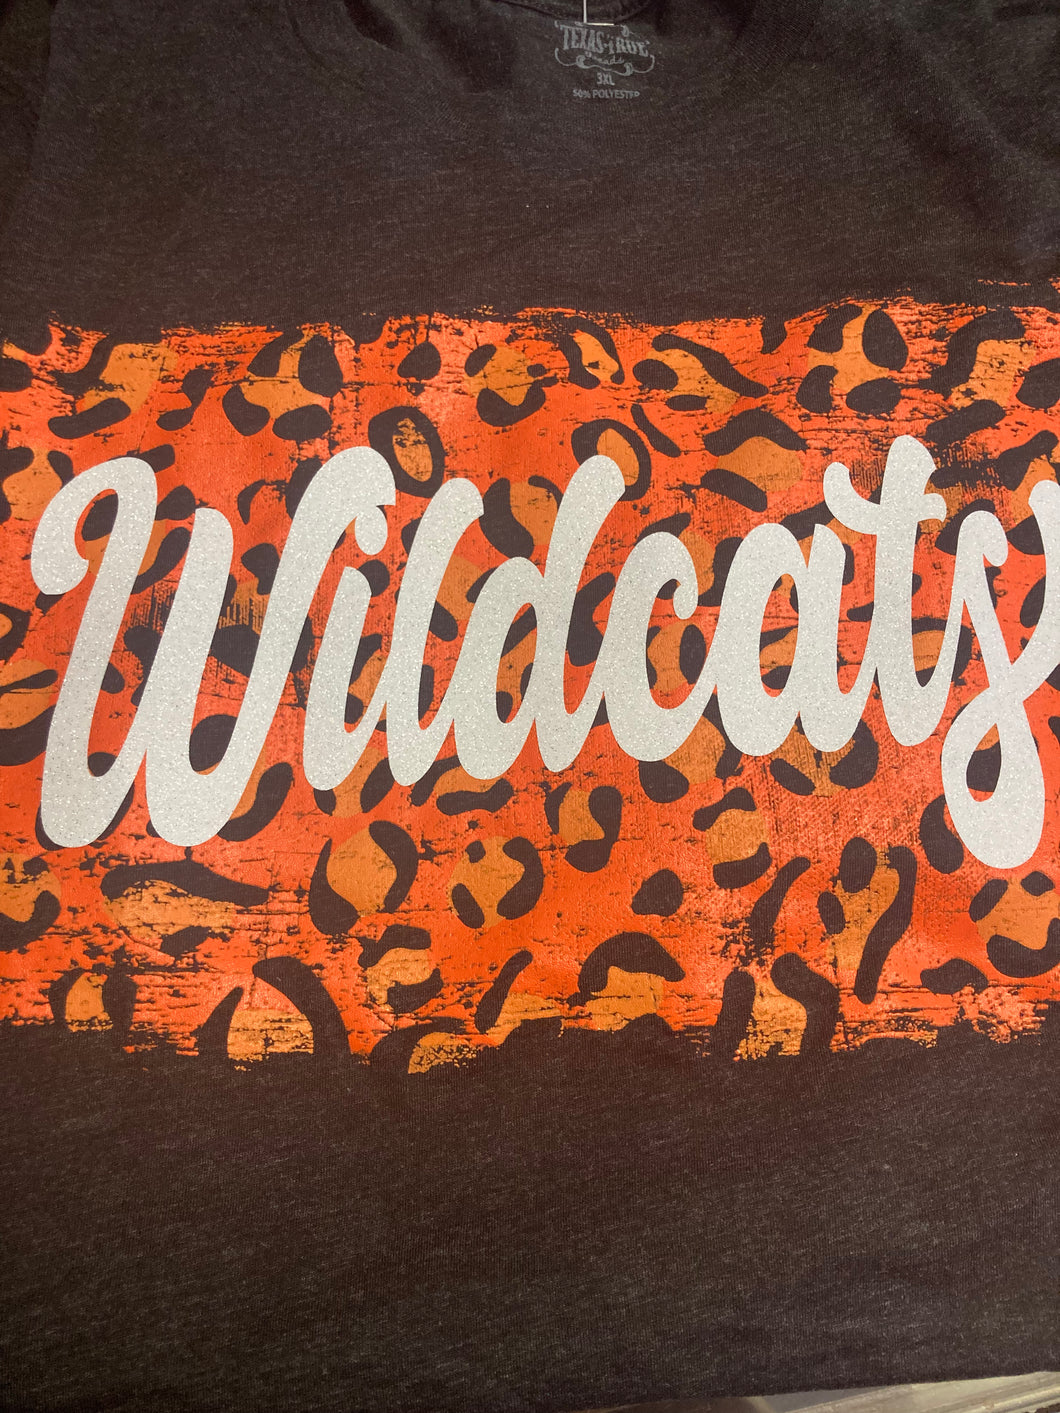 Leopard wildcat shirt